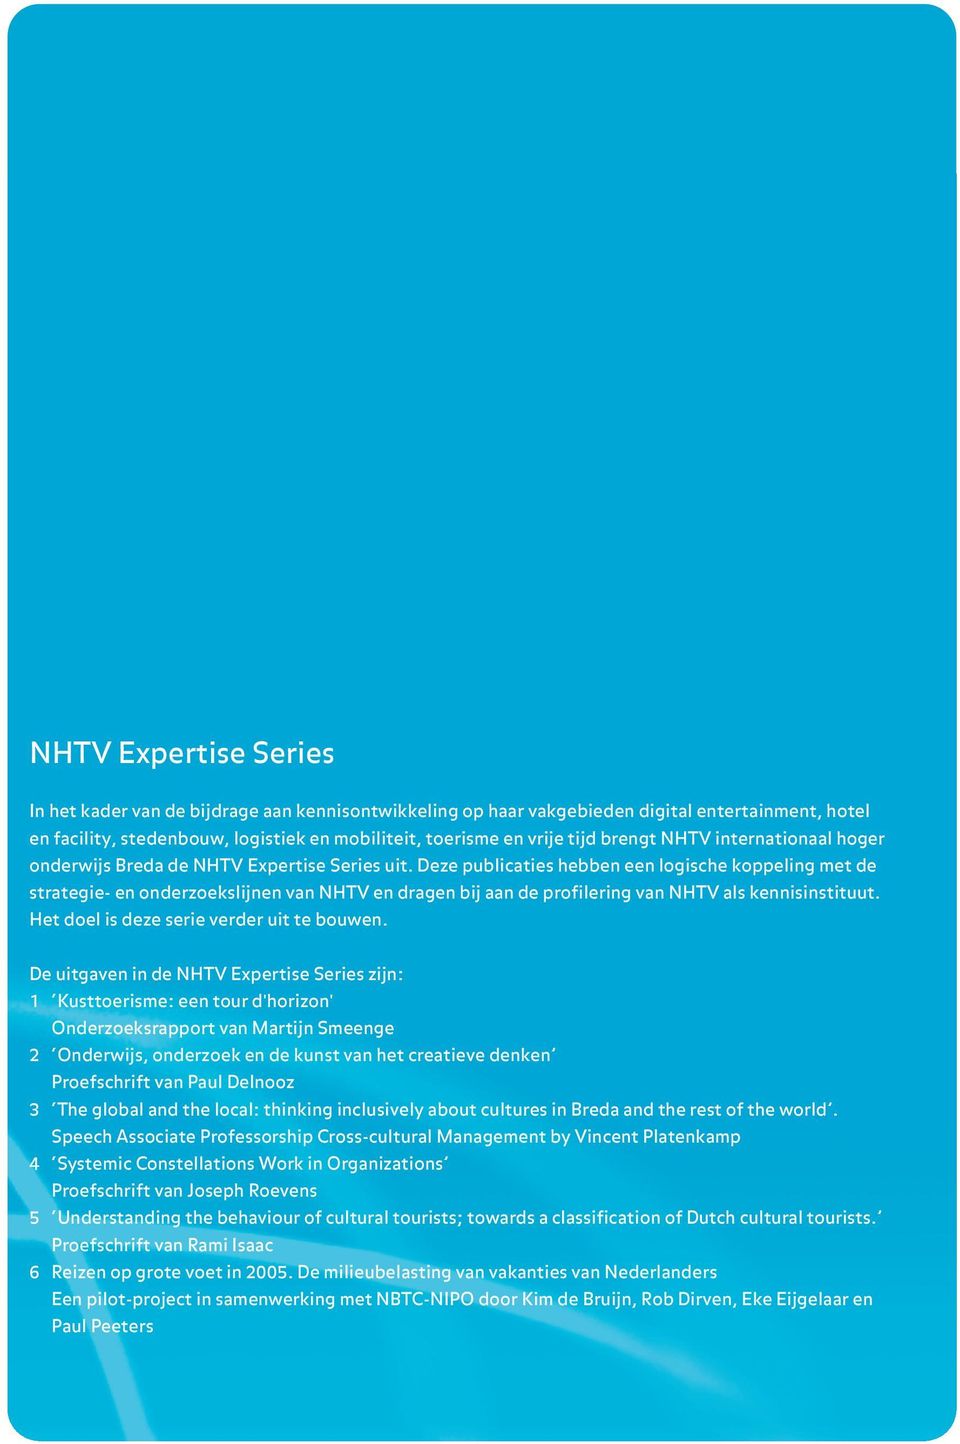 Deze publicaties hebben een logische koppeling met de strategie- en onderzoekslijnen van NHTV en dragen bij aan de profilering van NHTV als kennisinstituut.